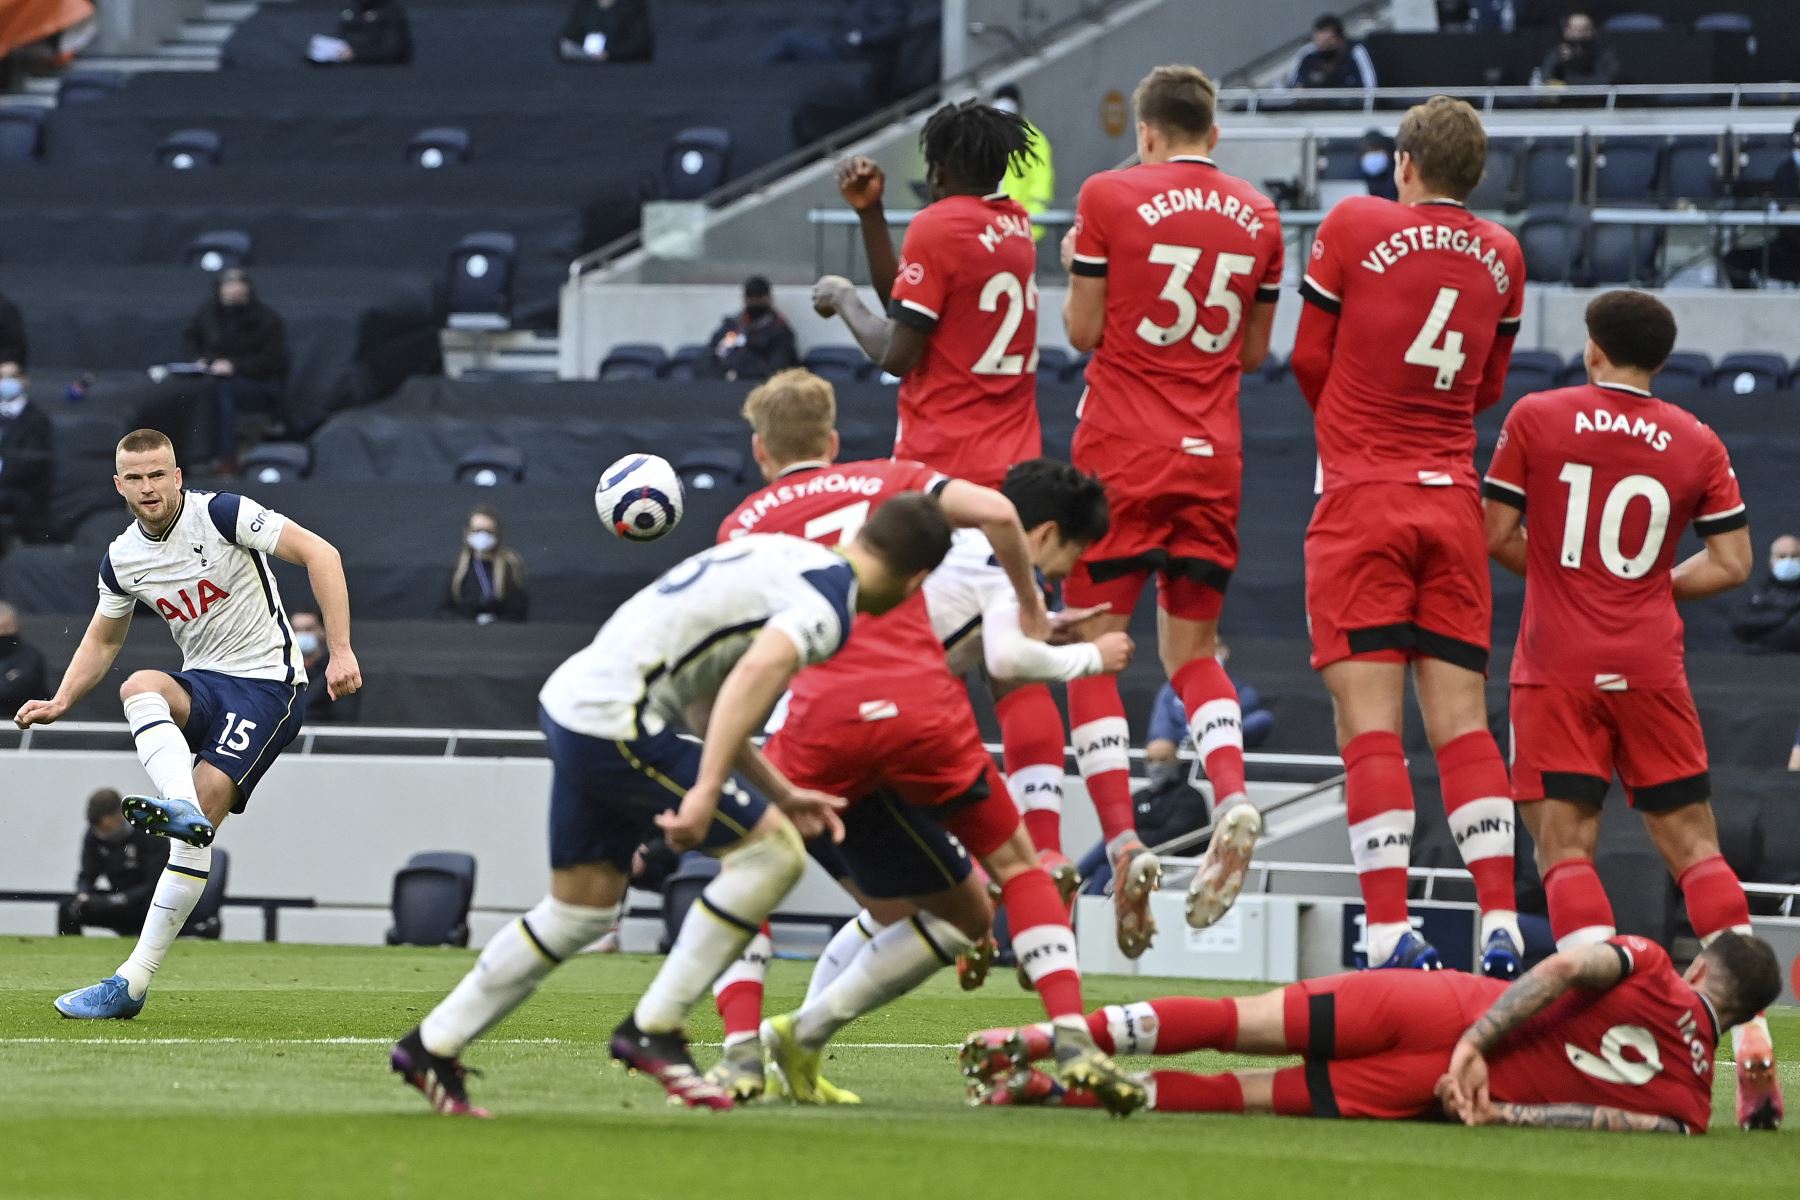 El defensor inglés del Tottenham Hotspur Eric Dier realiza un tiro libre durante el partido de fútbol de la Premier League. Foto: AFP